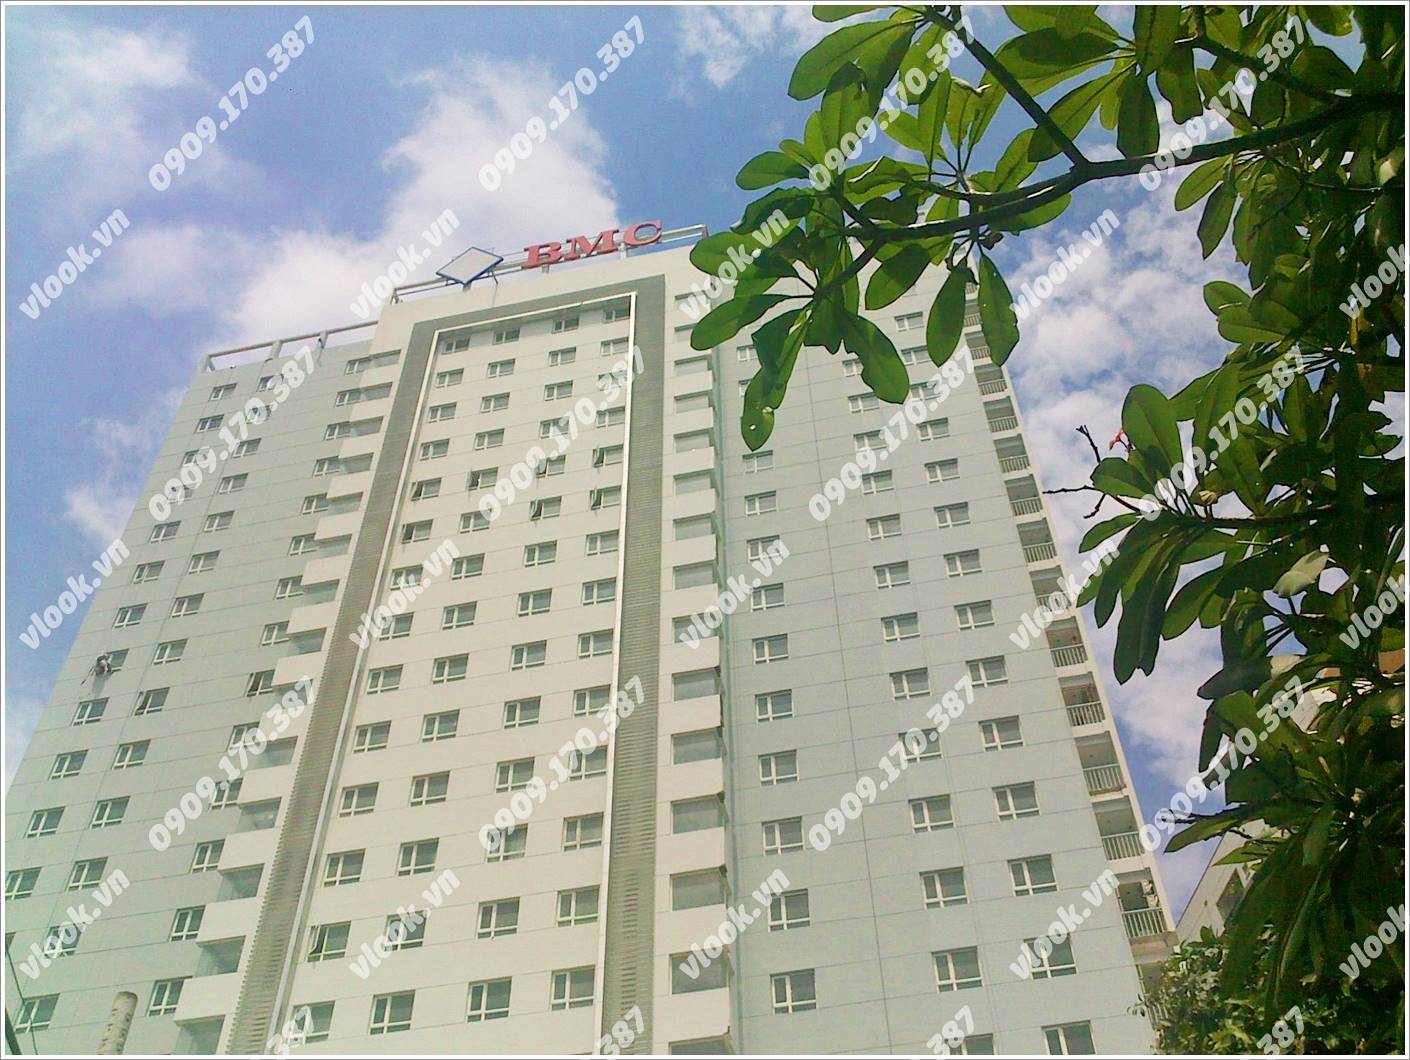 Cao ốc văn phòng cho thuê BMC Building Võ Văn Kiệt Quận 1 TP.HCM - vlook.vn